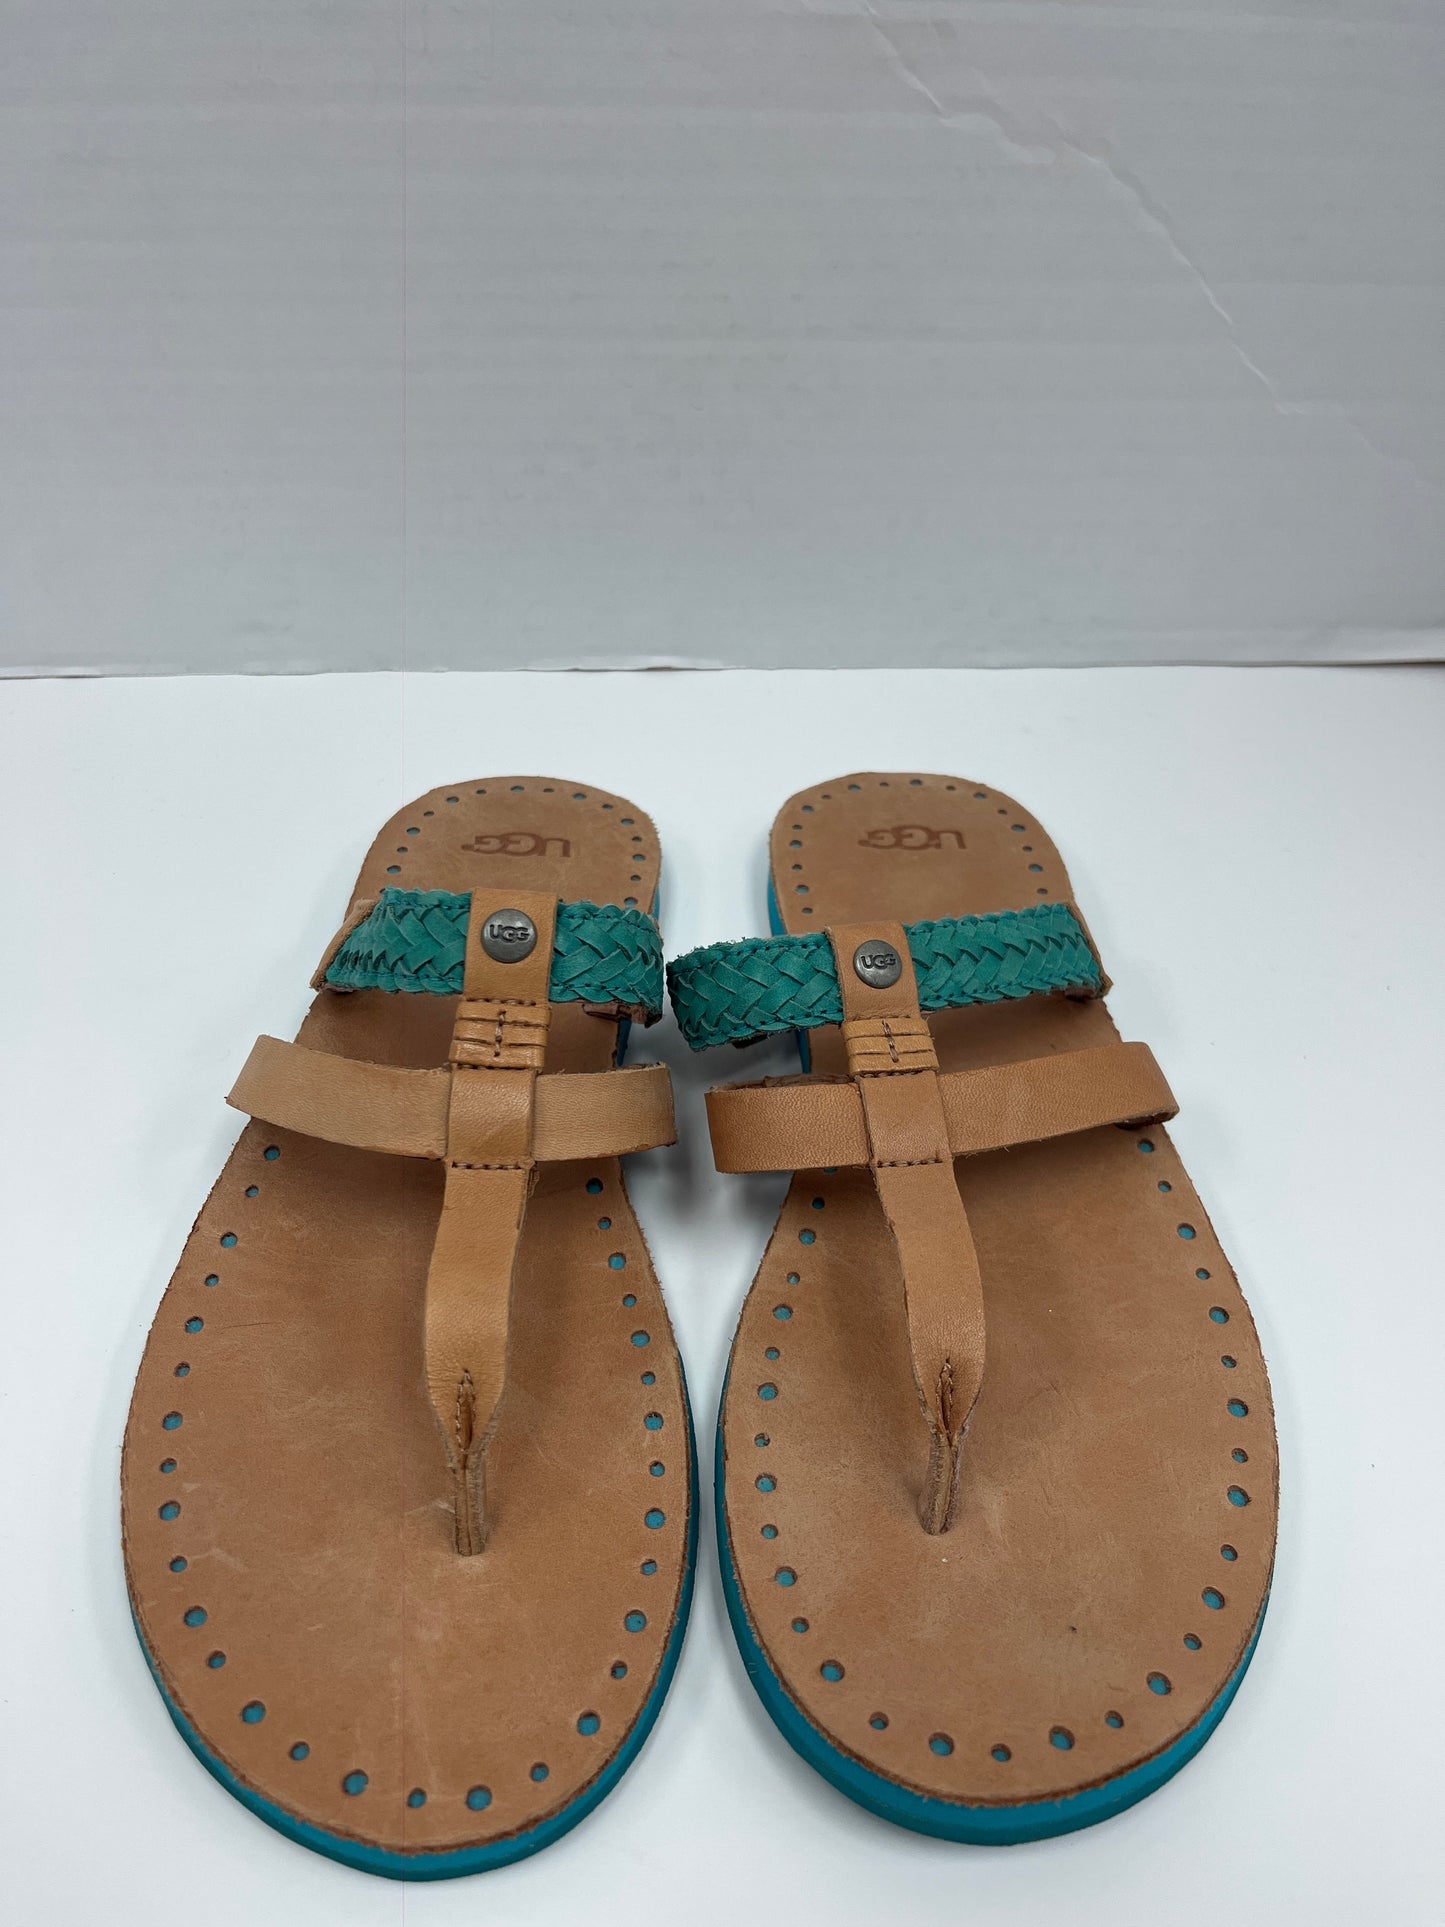 Sandals Flip Flops By Ugg  Size: 9